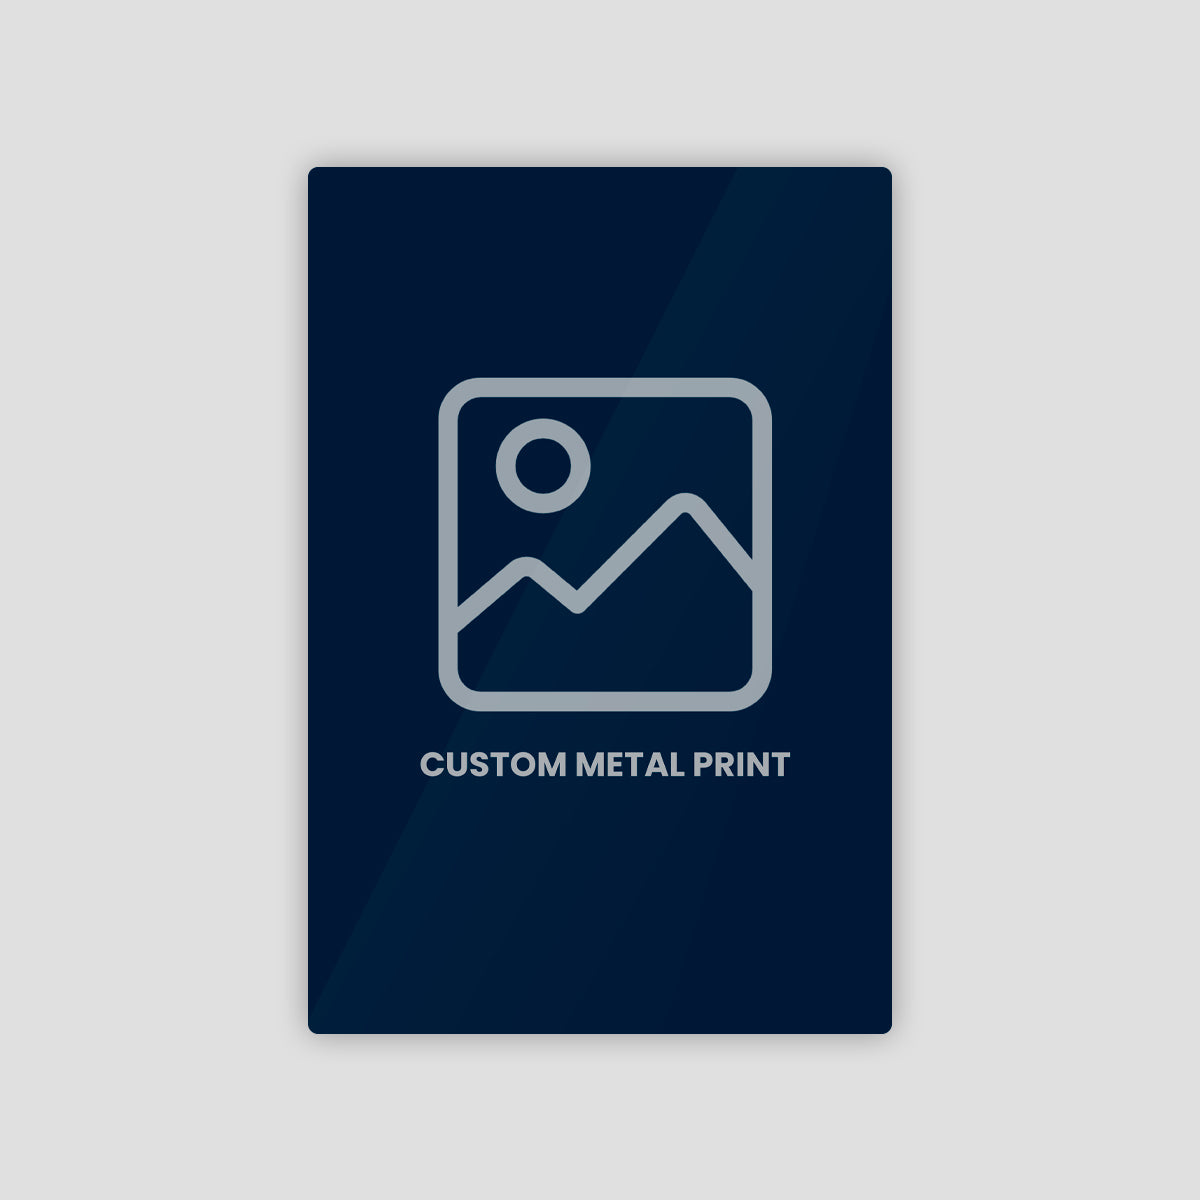 Customize Your Metal Photo Print